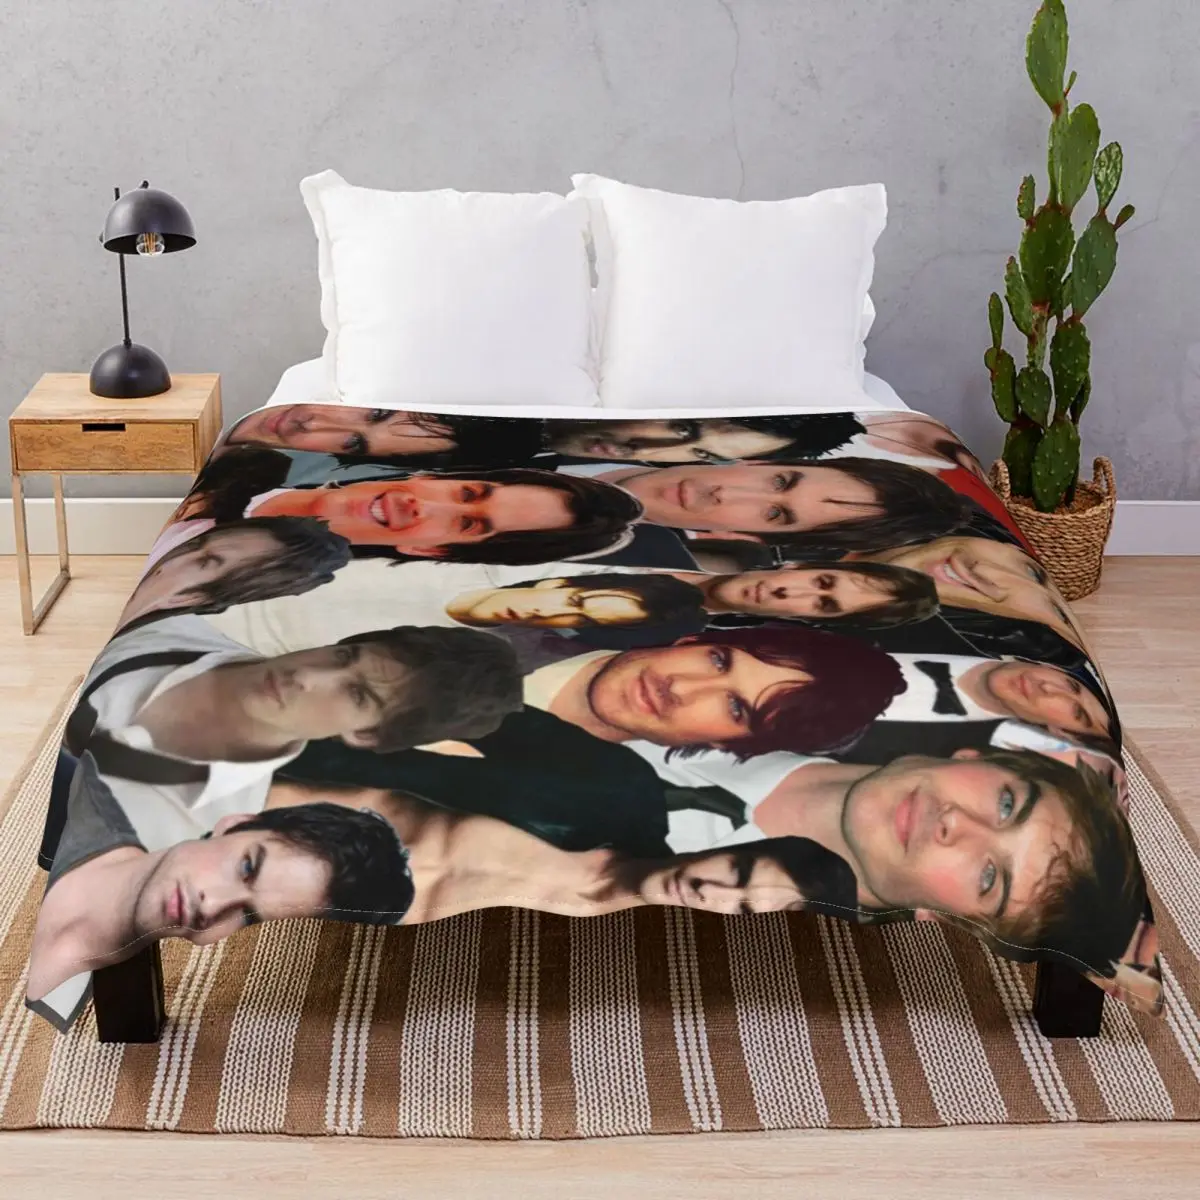 Ian Somerhalder Photo Collage Blankets Velvet Plush Decoration Soft Unisex Throw Blanket for Bed Sofa Travel Office